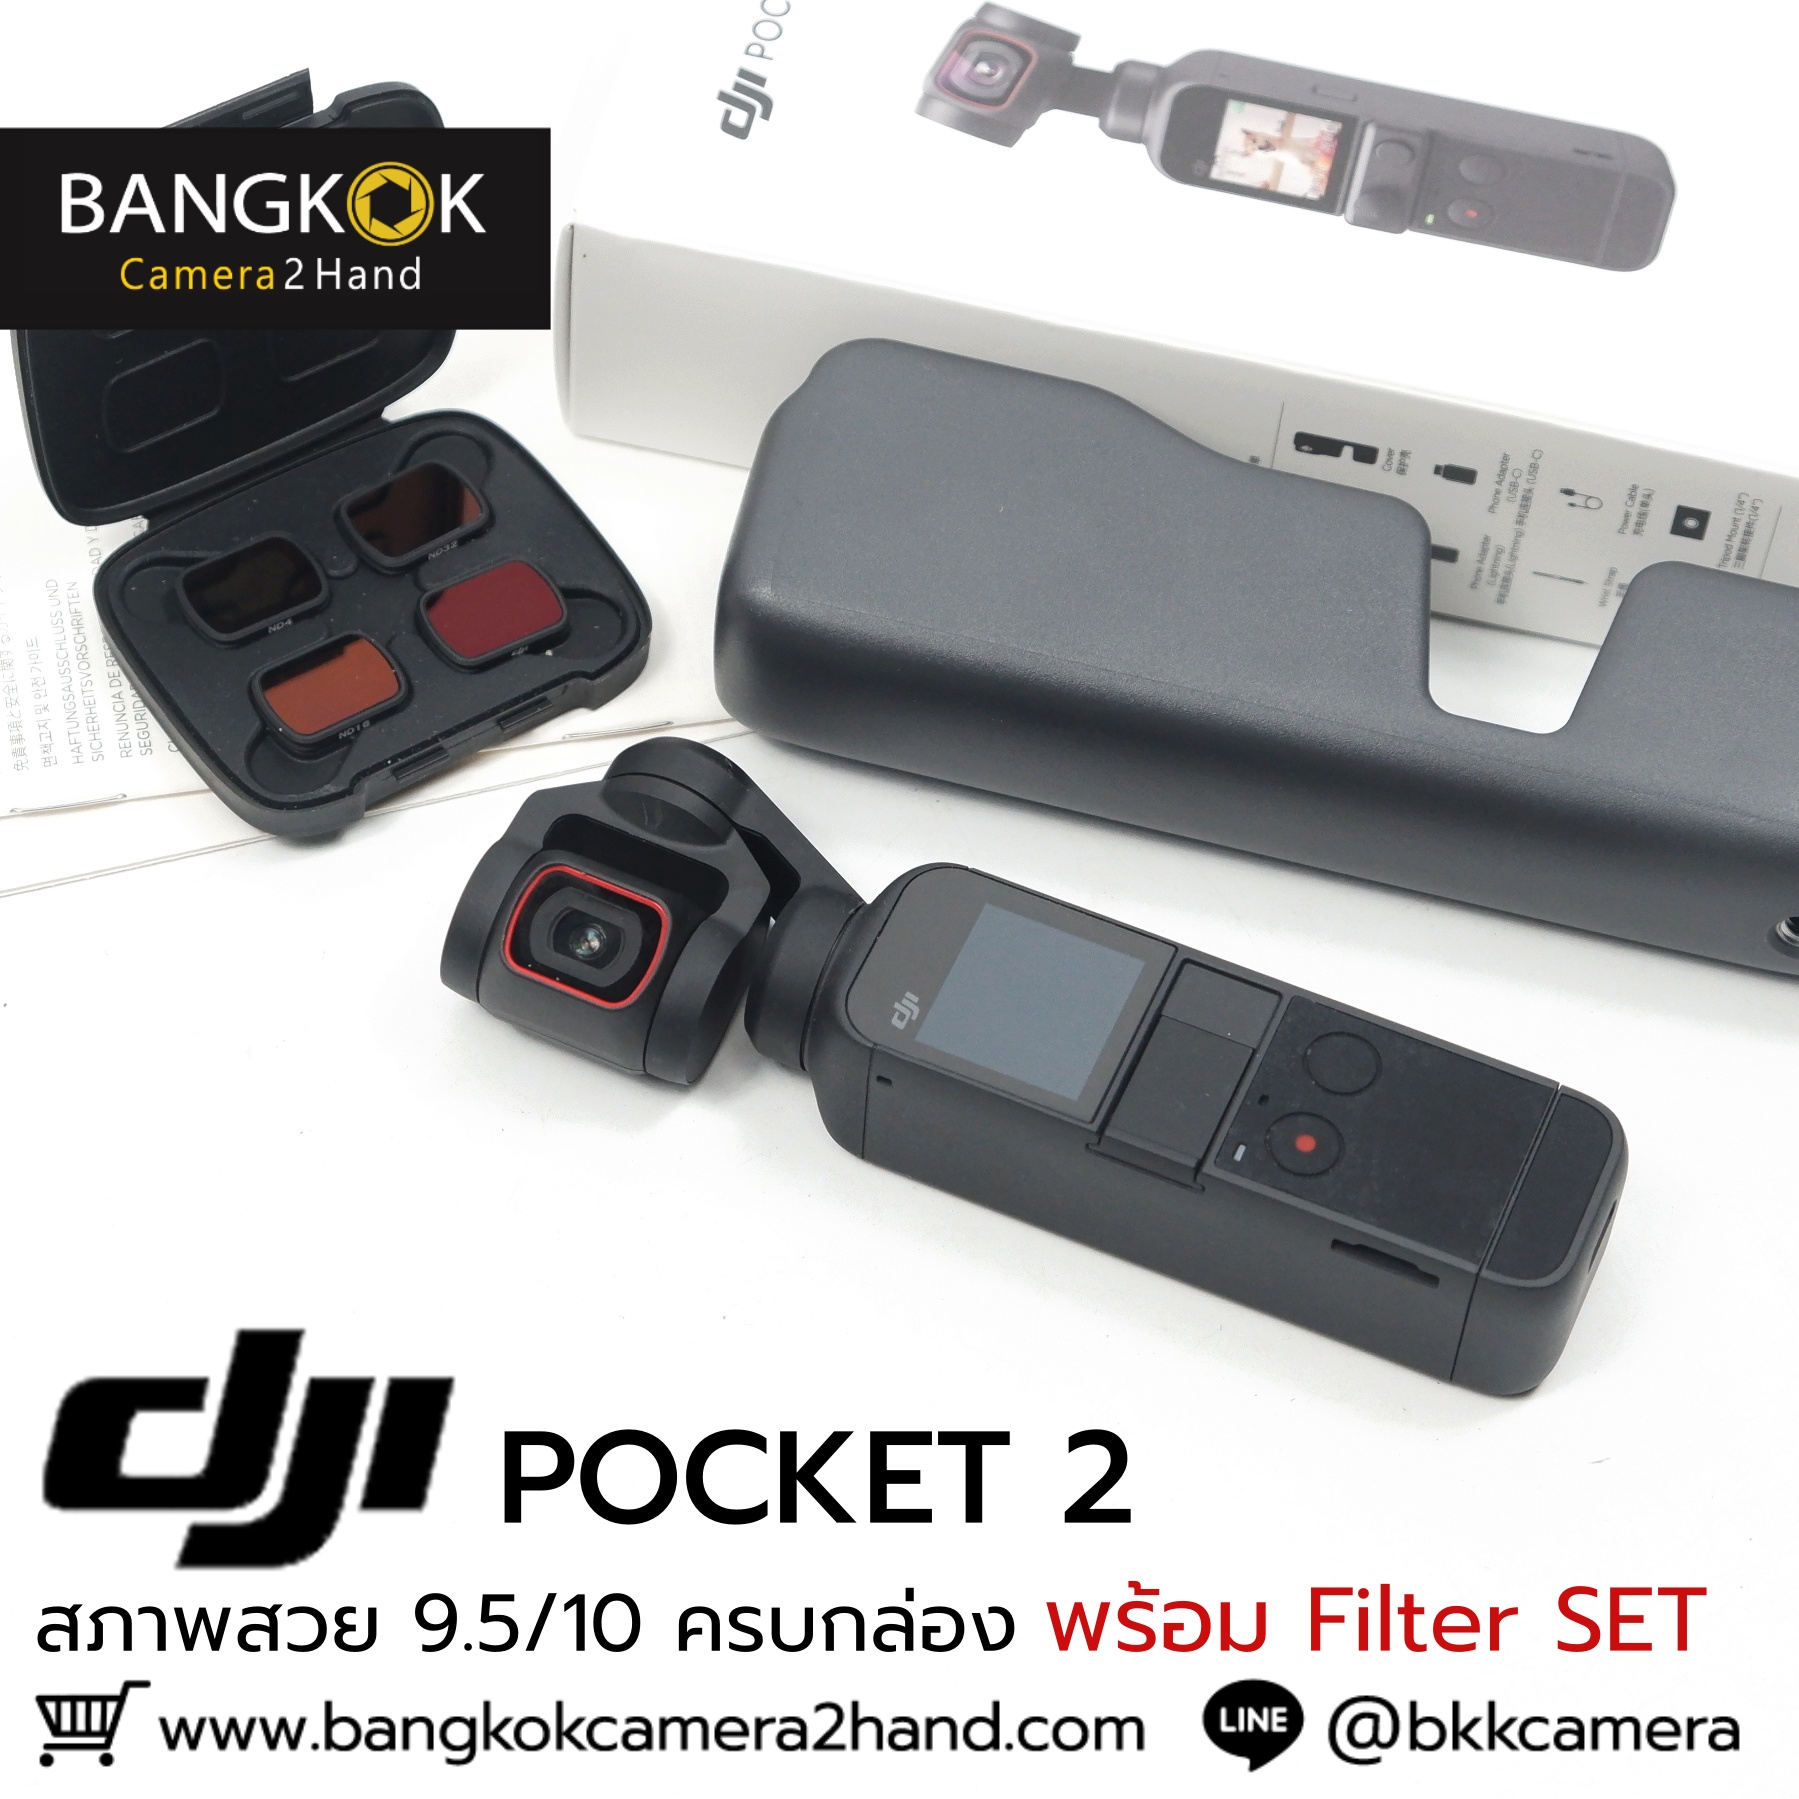 Pocket 2 พร้อมชุด Filter SET